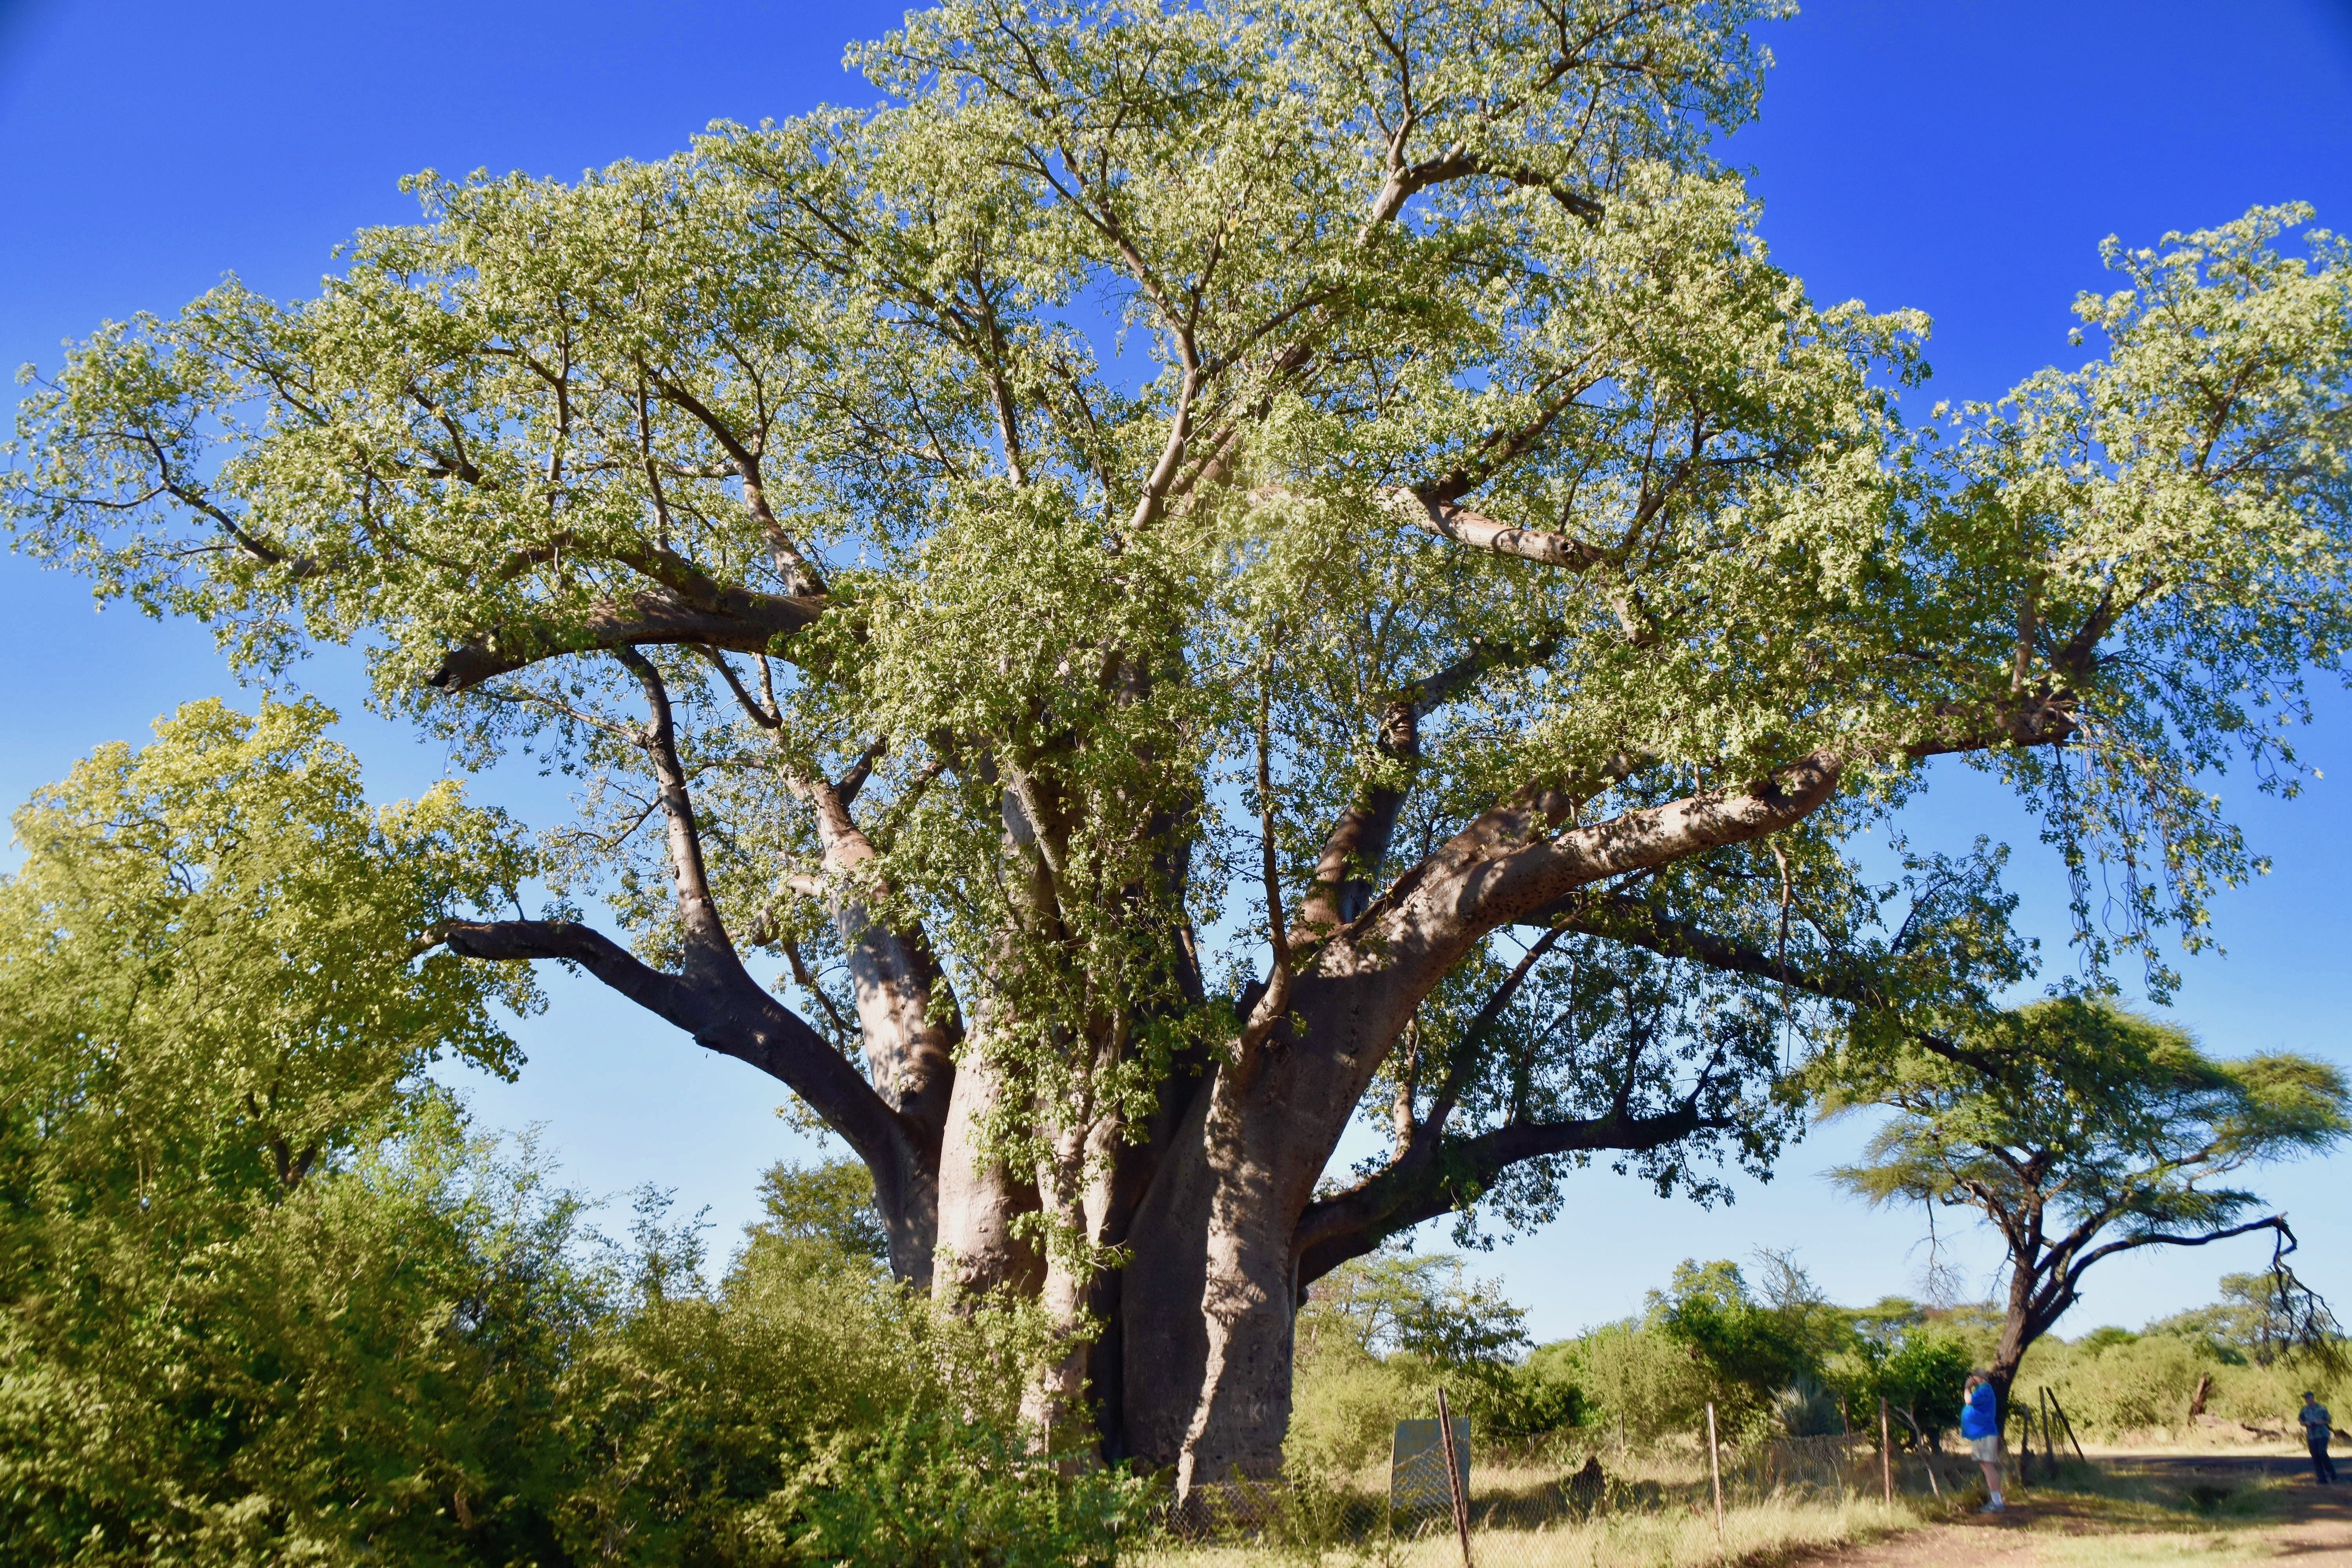 1200 Year Old Baobab